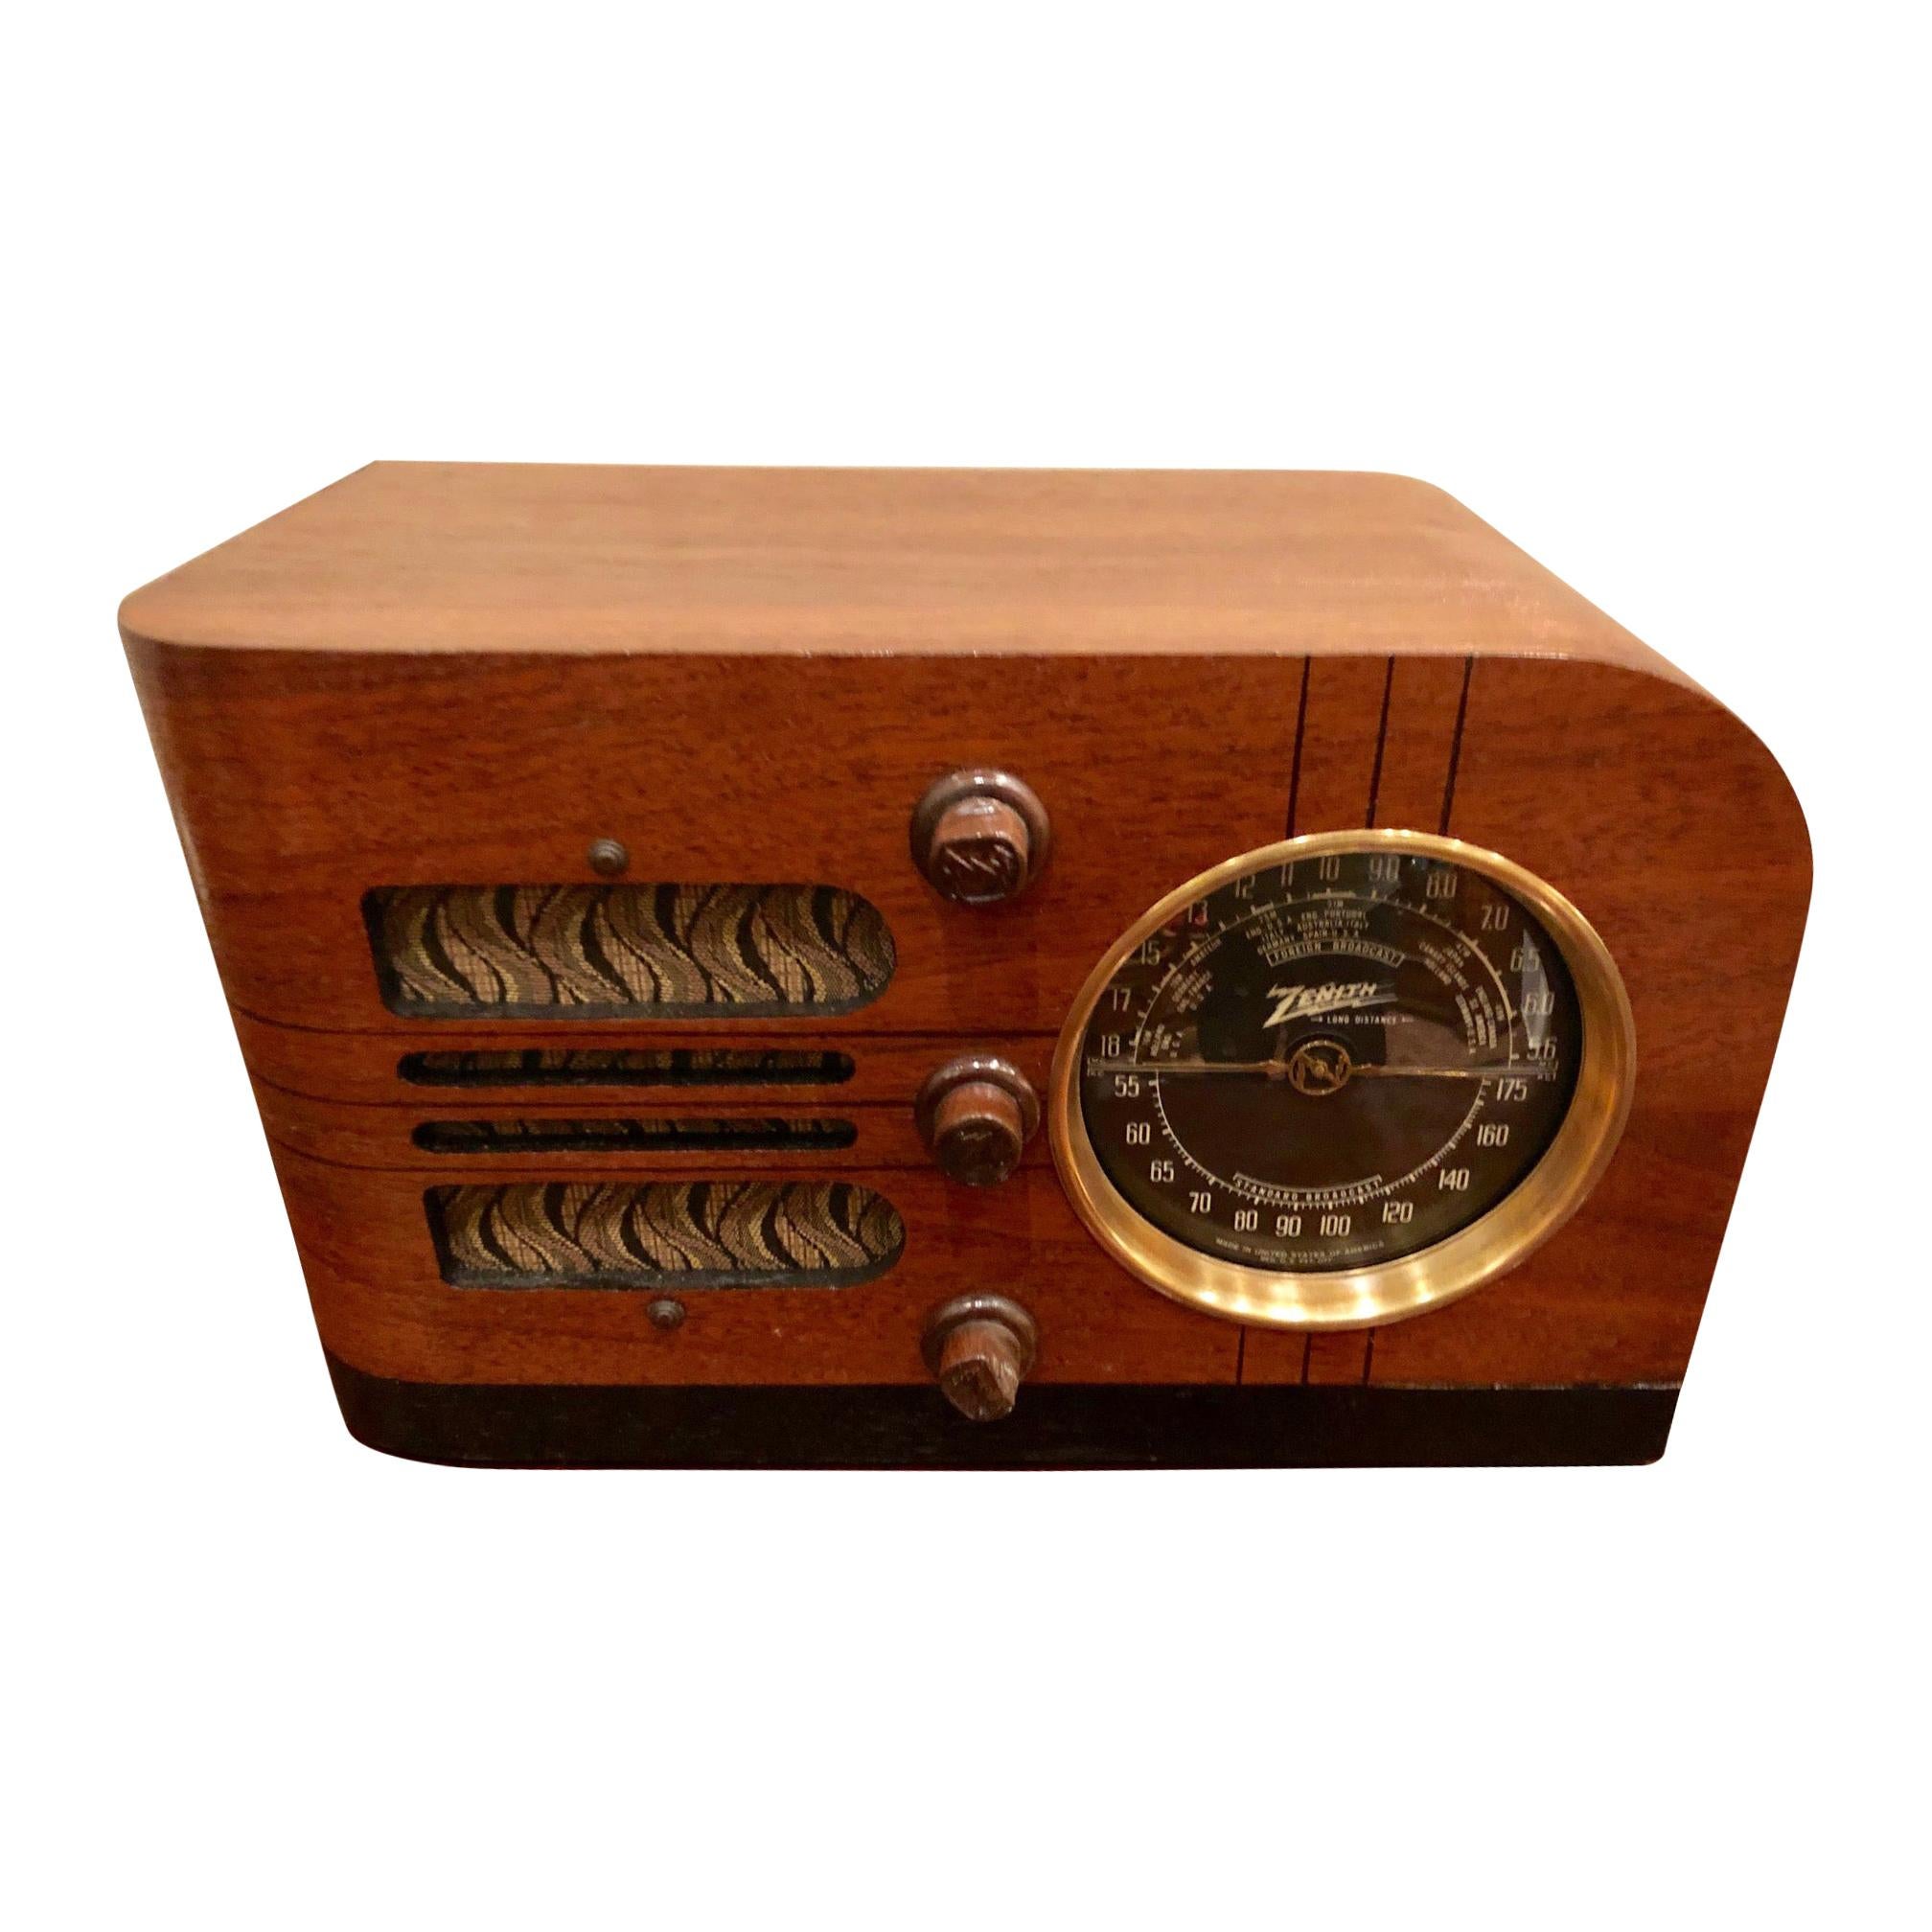 Tube Radios - 12 For Sale on 1stDibs | modern tube radio